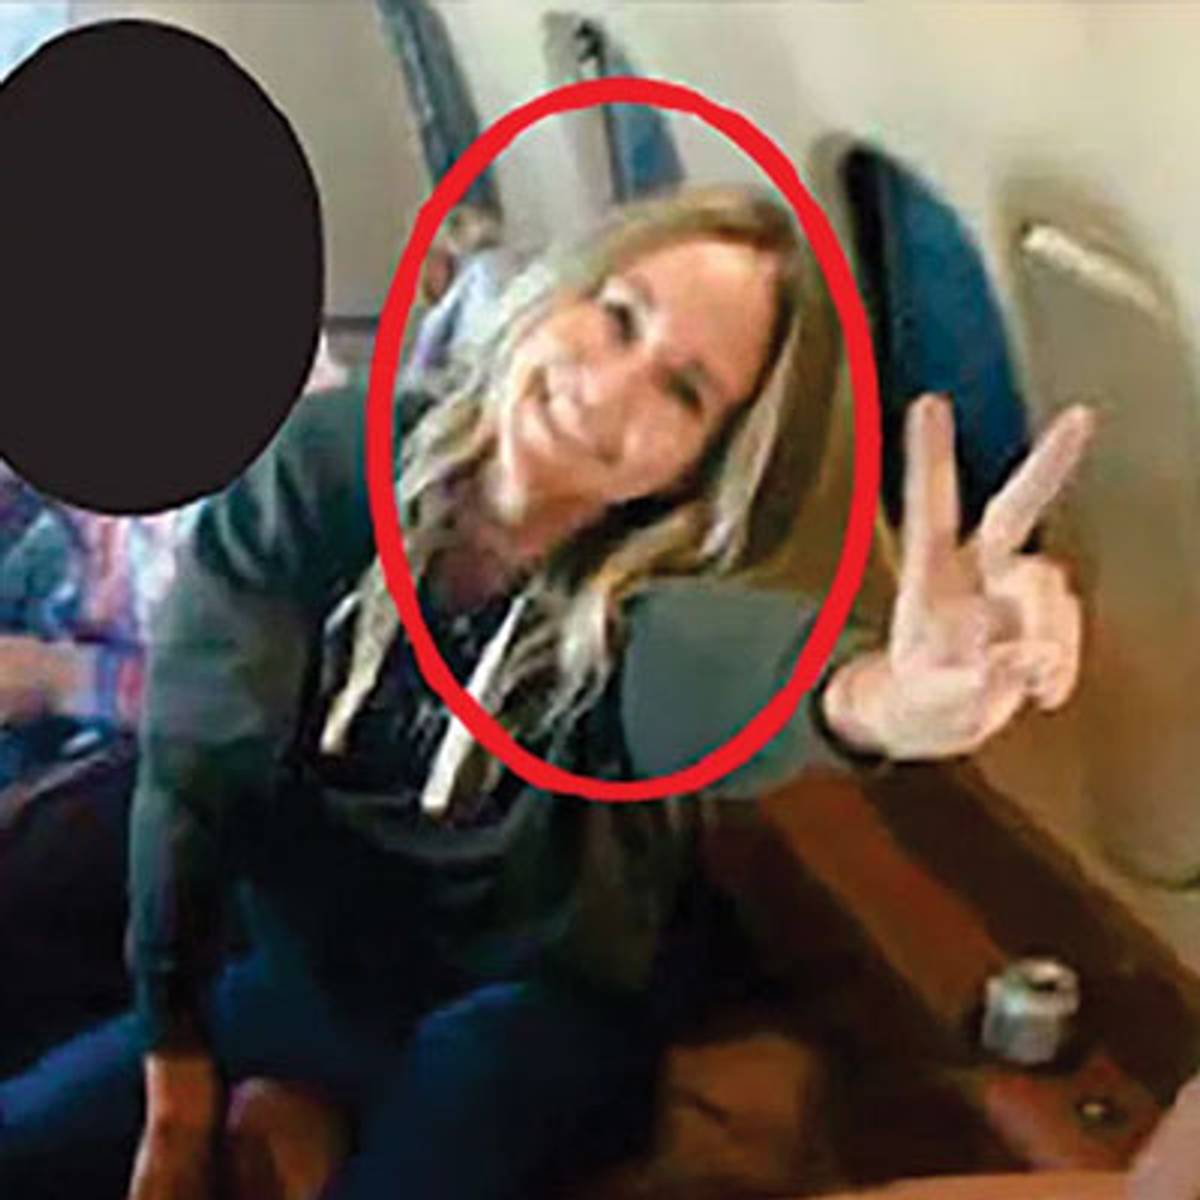 Кэтрин Стейвли Шваб на фото внутри частного самолета, направляющегося в Вашингтон для участия в беспорядках 6 января 2021 года.